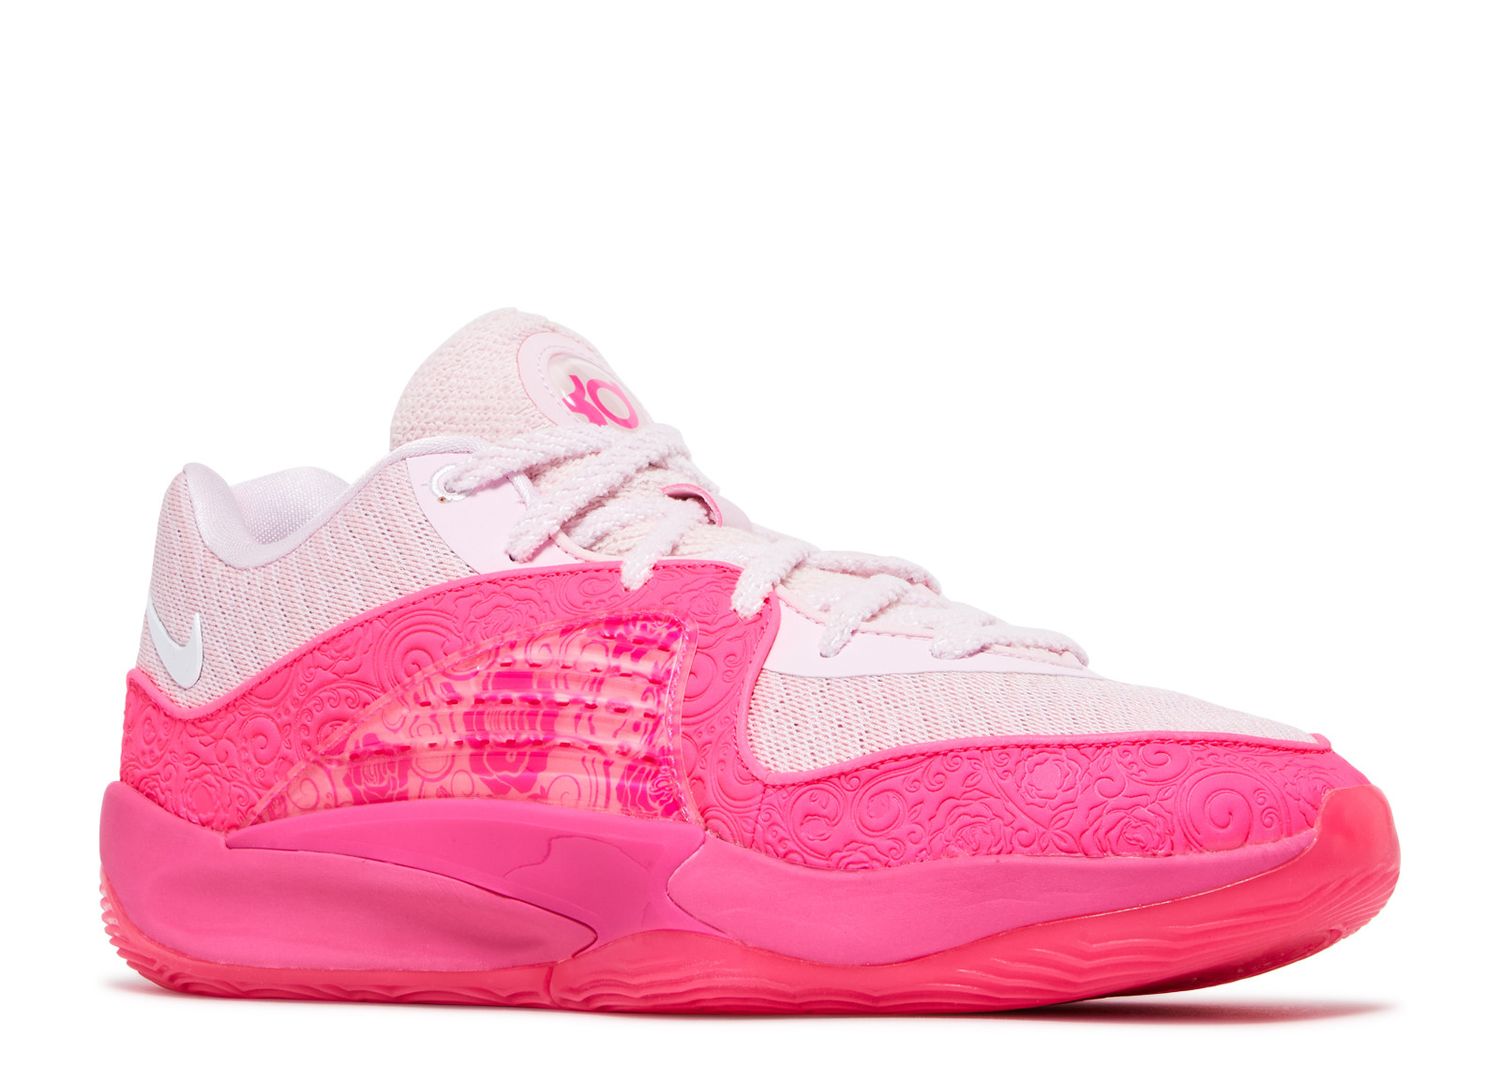 KD 16 NRG EP 'Aunt Pearl' Nike FQ9216 600 pink foam/fierce pink